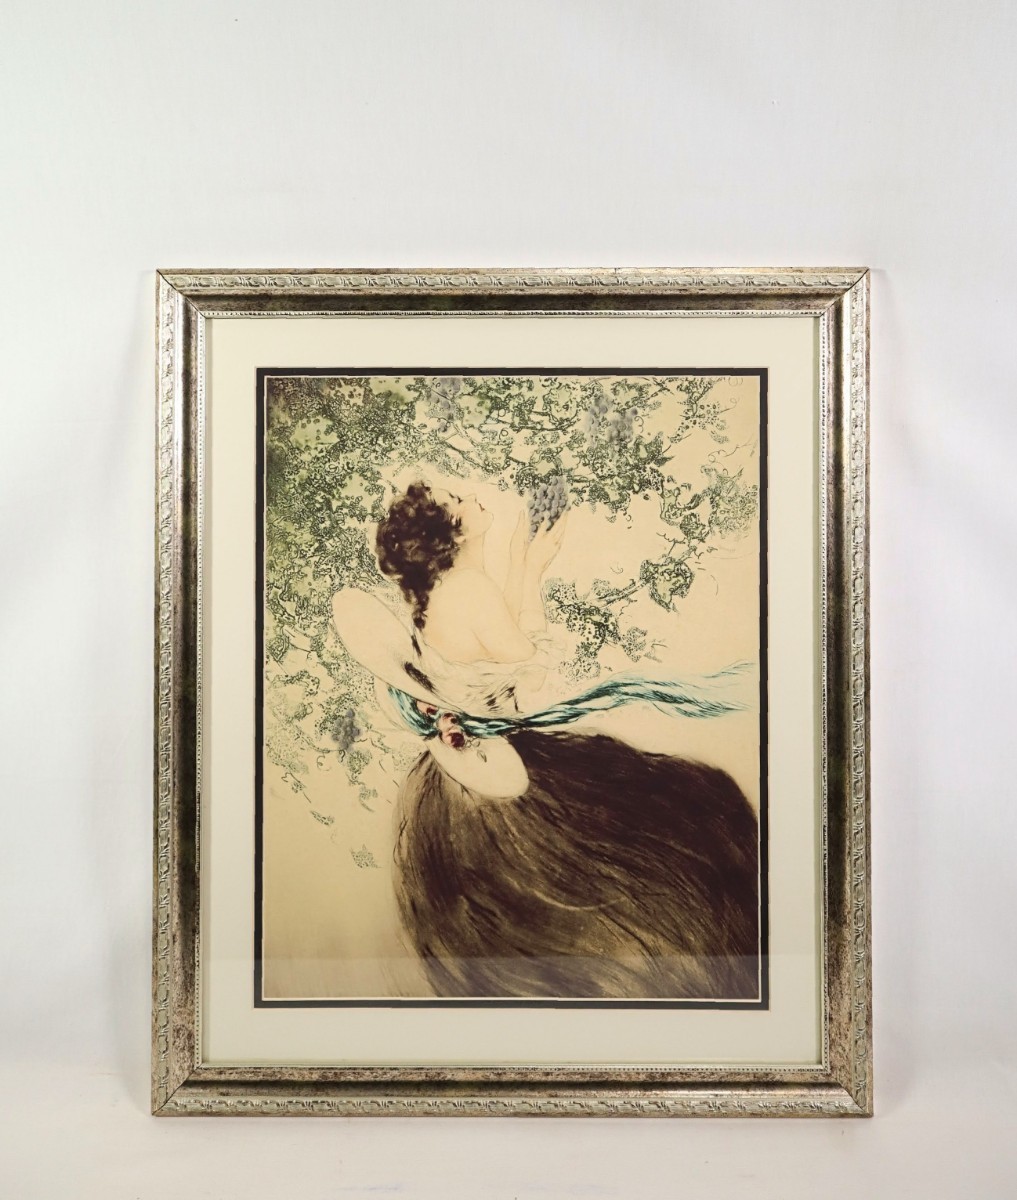 ルイ・イカール オフセット「Grapes 実りの葡萄」画寸 40cm×50cm フランス人作家 パリの華やかな女性を繊細で優雅なタッチで表現 7397